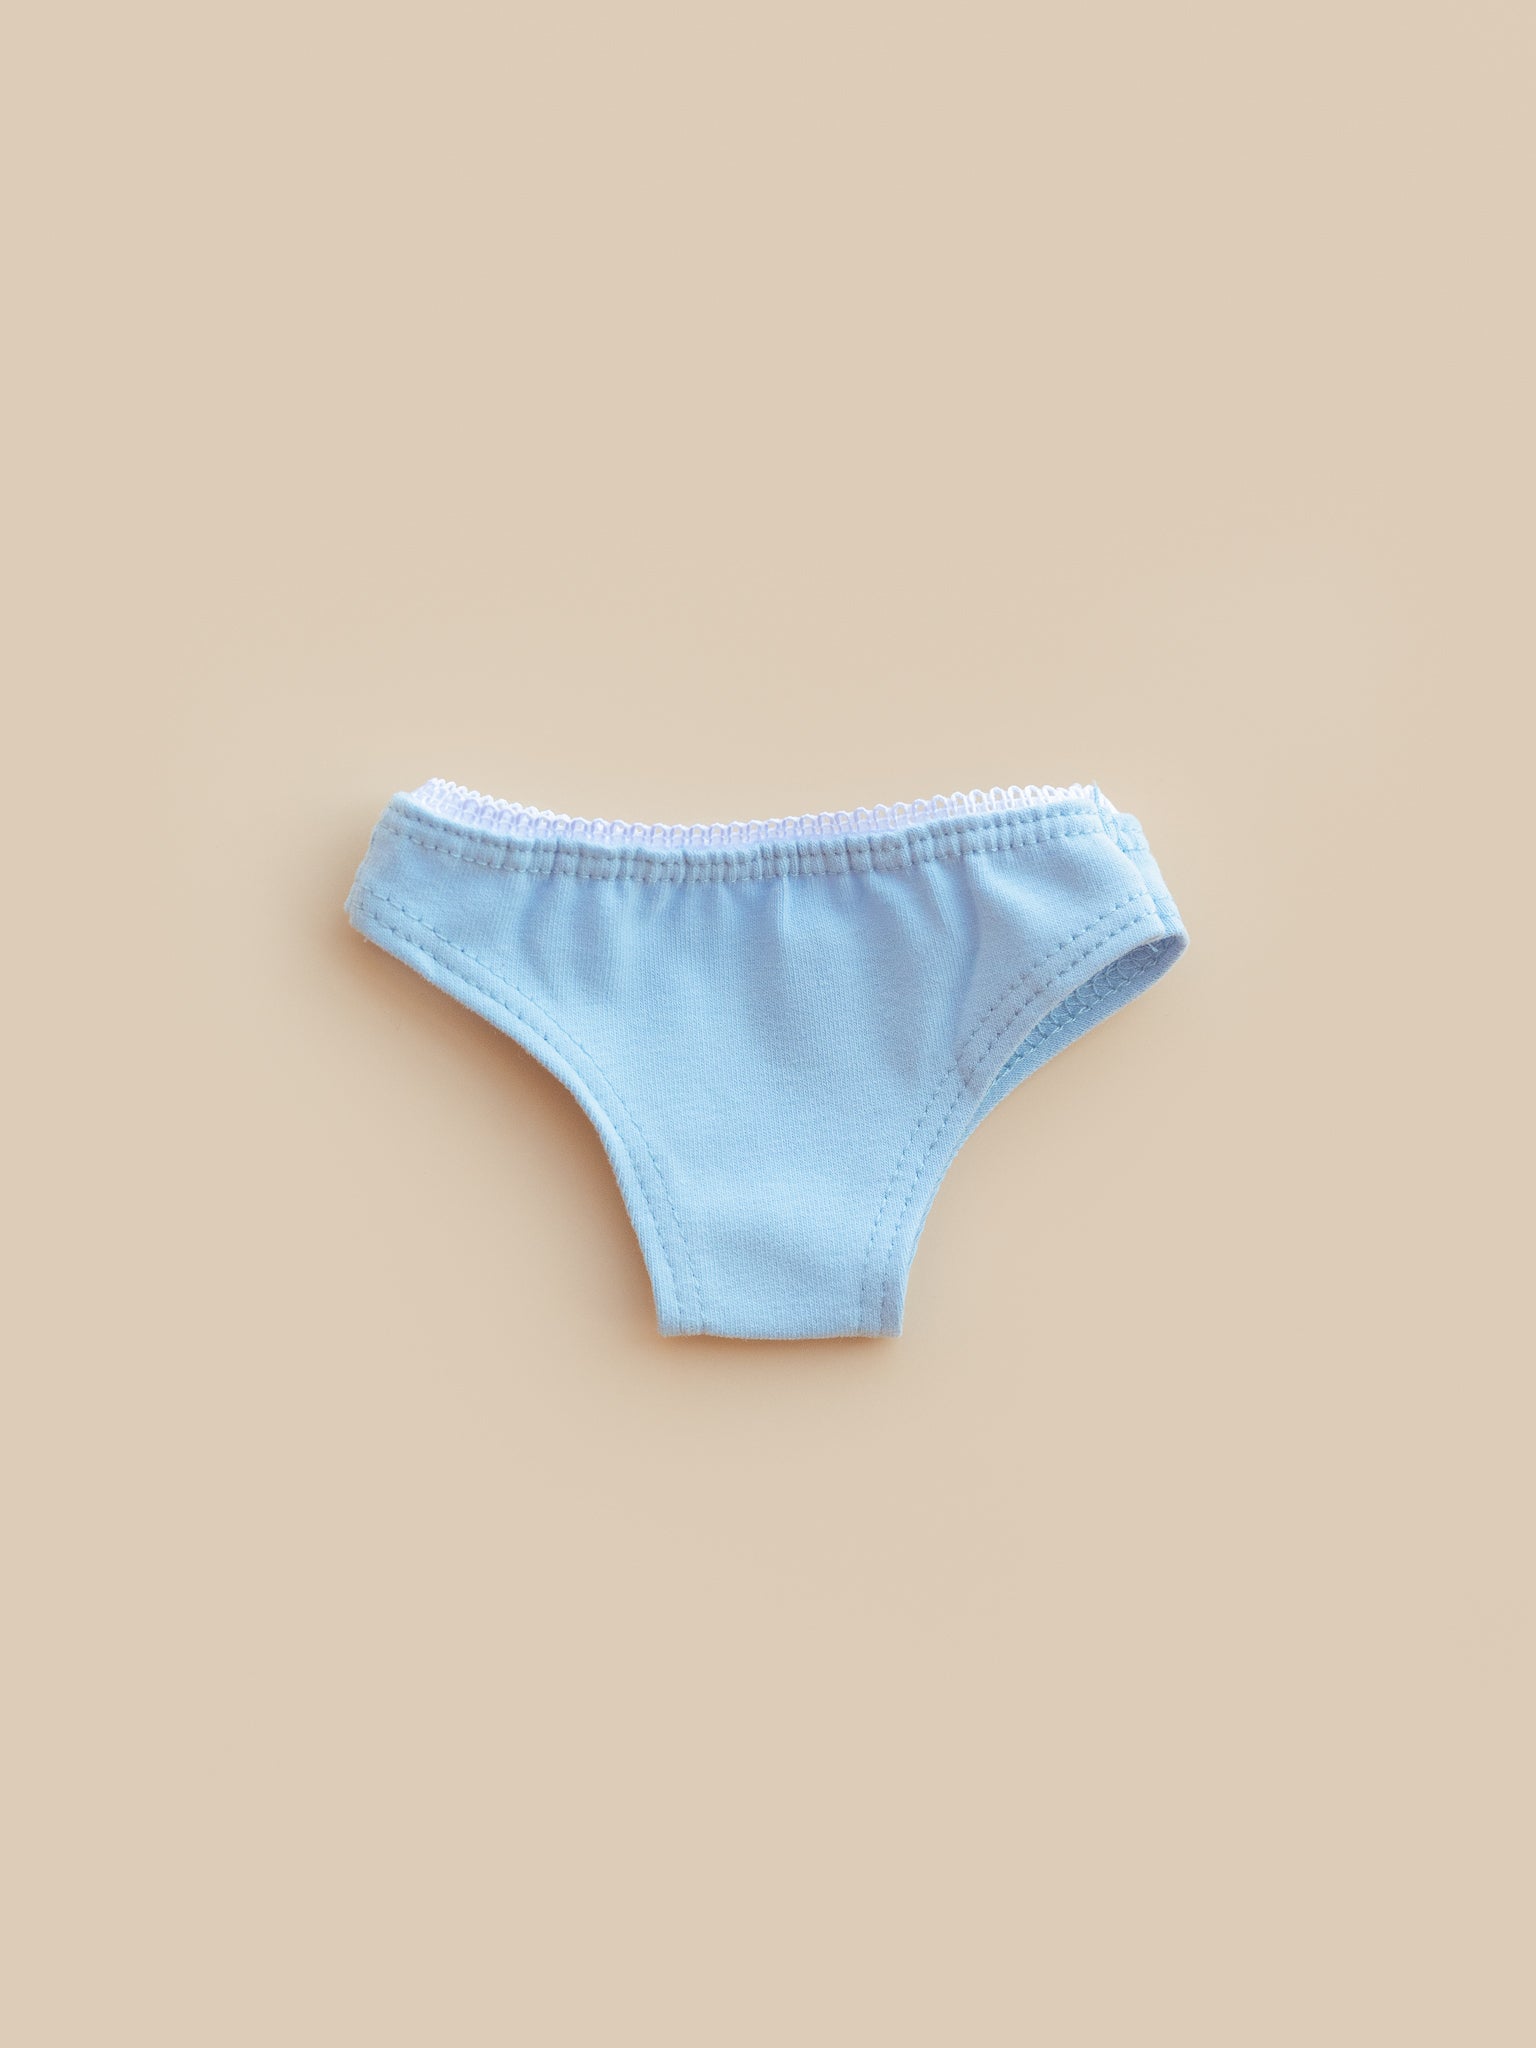 Baby Blue Cotton Doll Underwear - Ellie & Beck Co.